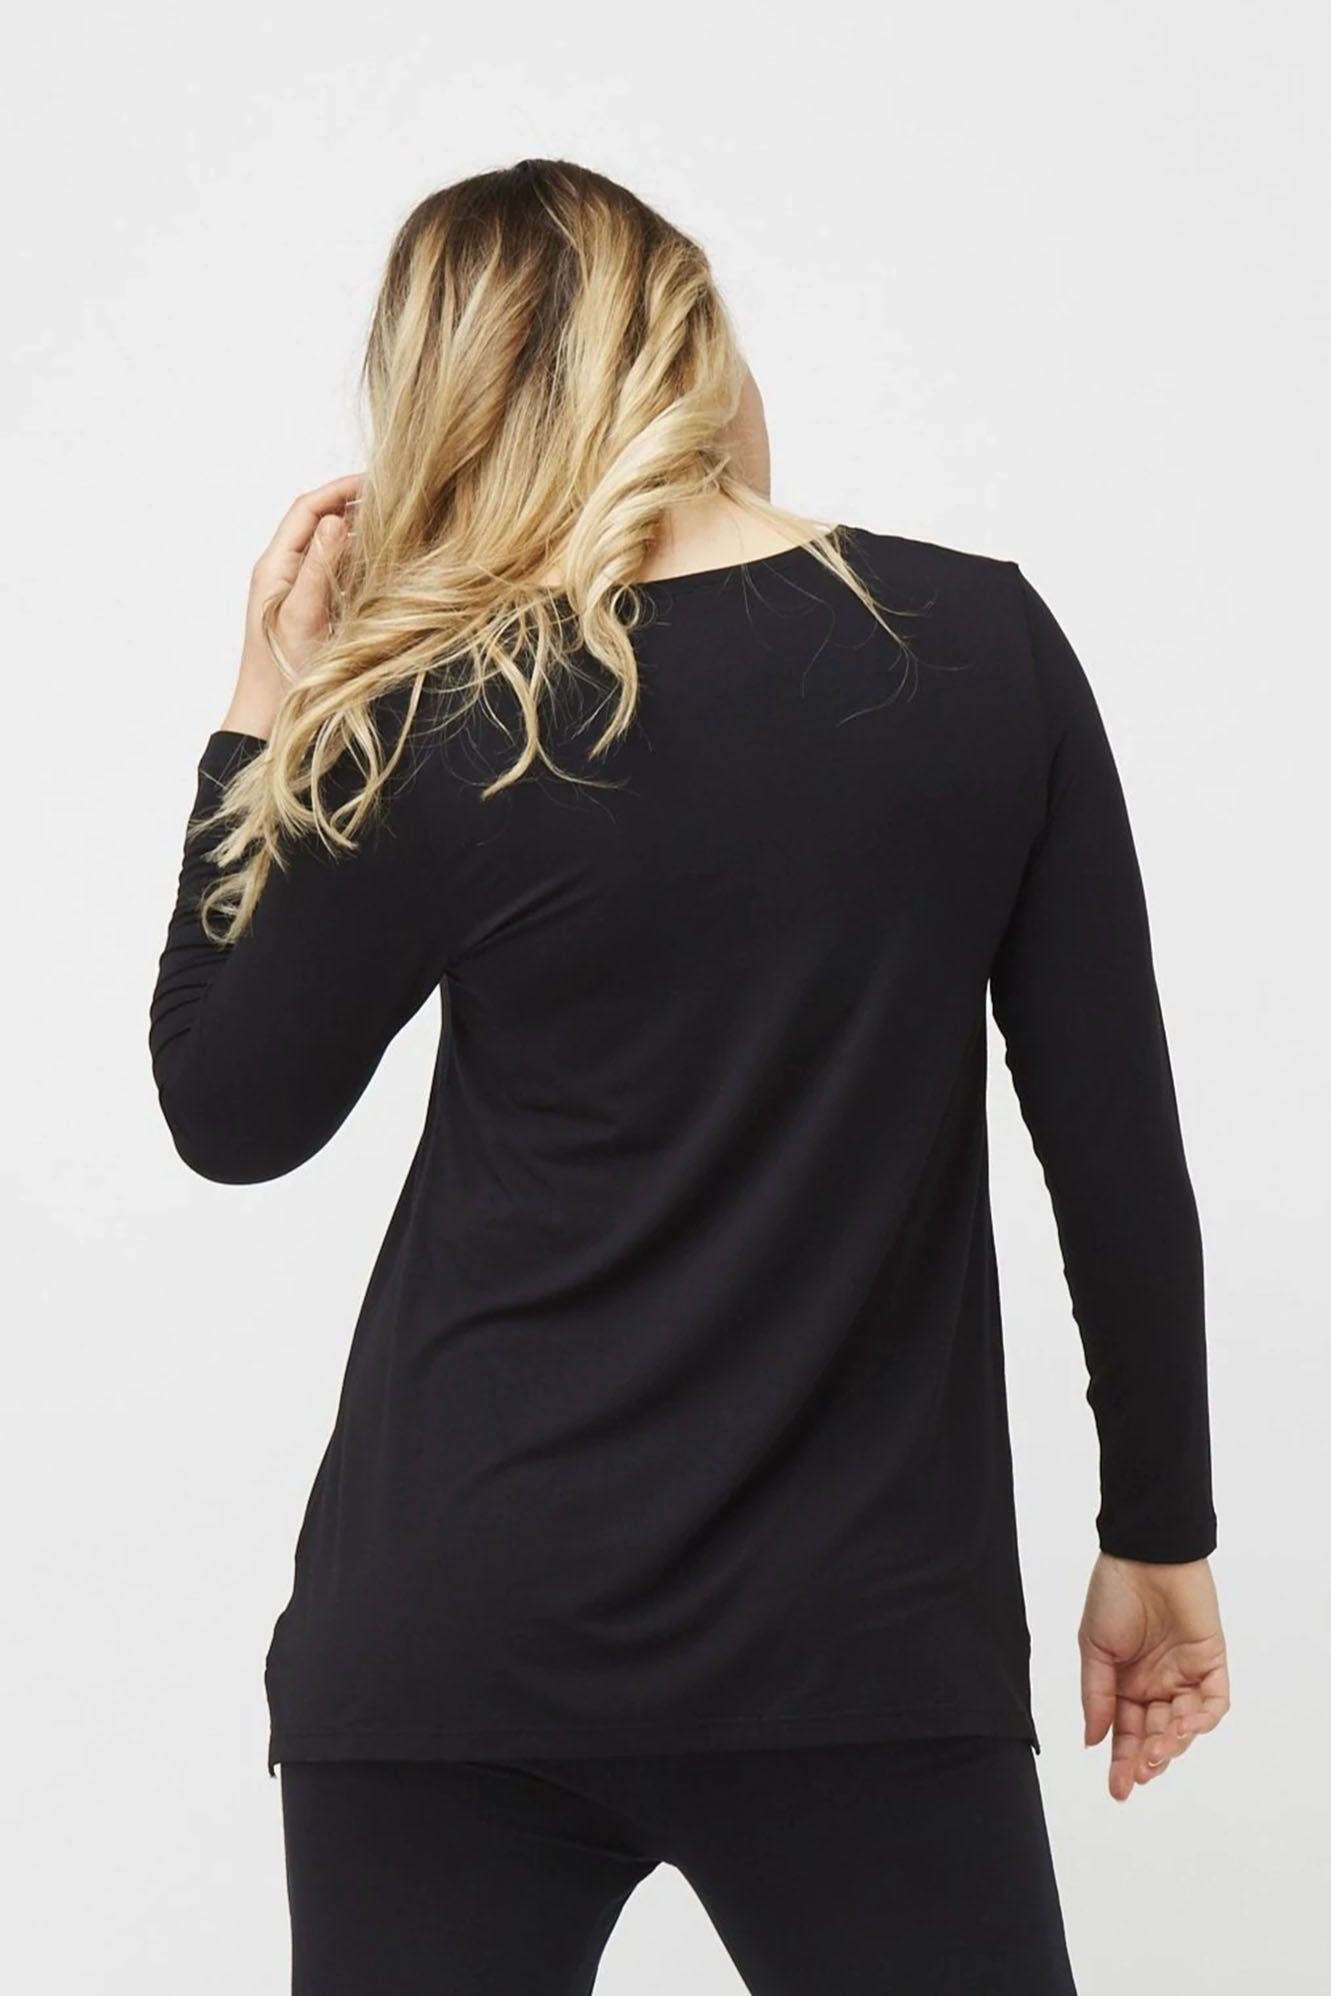 Woman wearing Tani Swing Long Sleeve in black 79372 back view